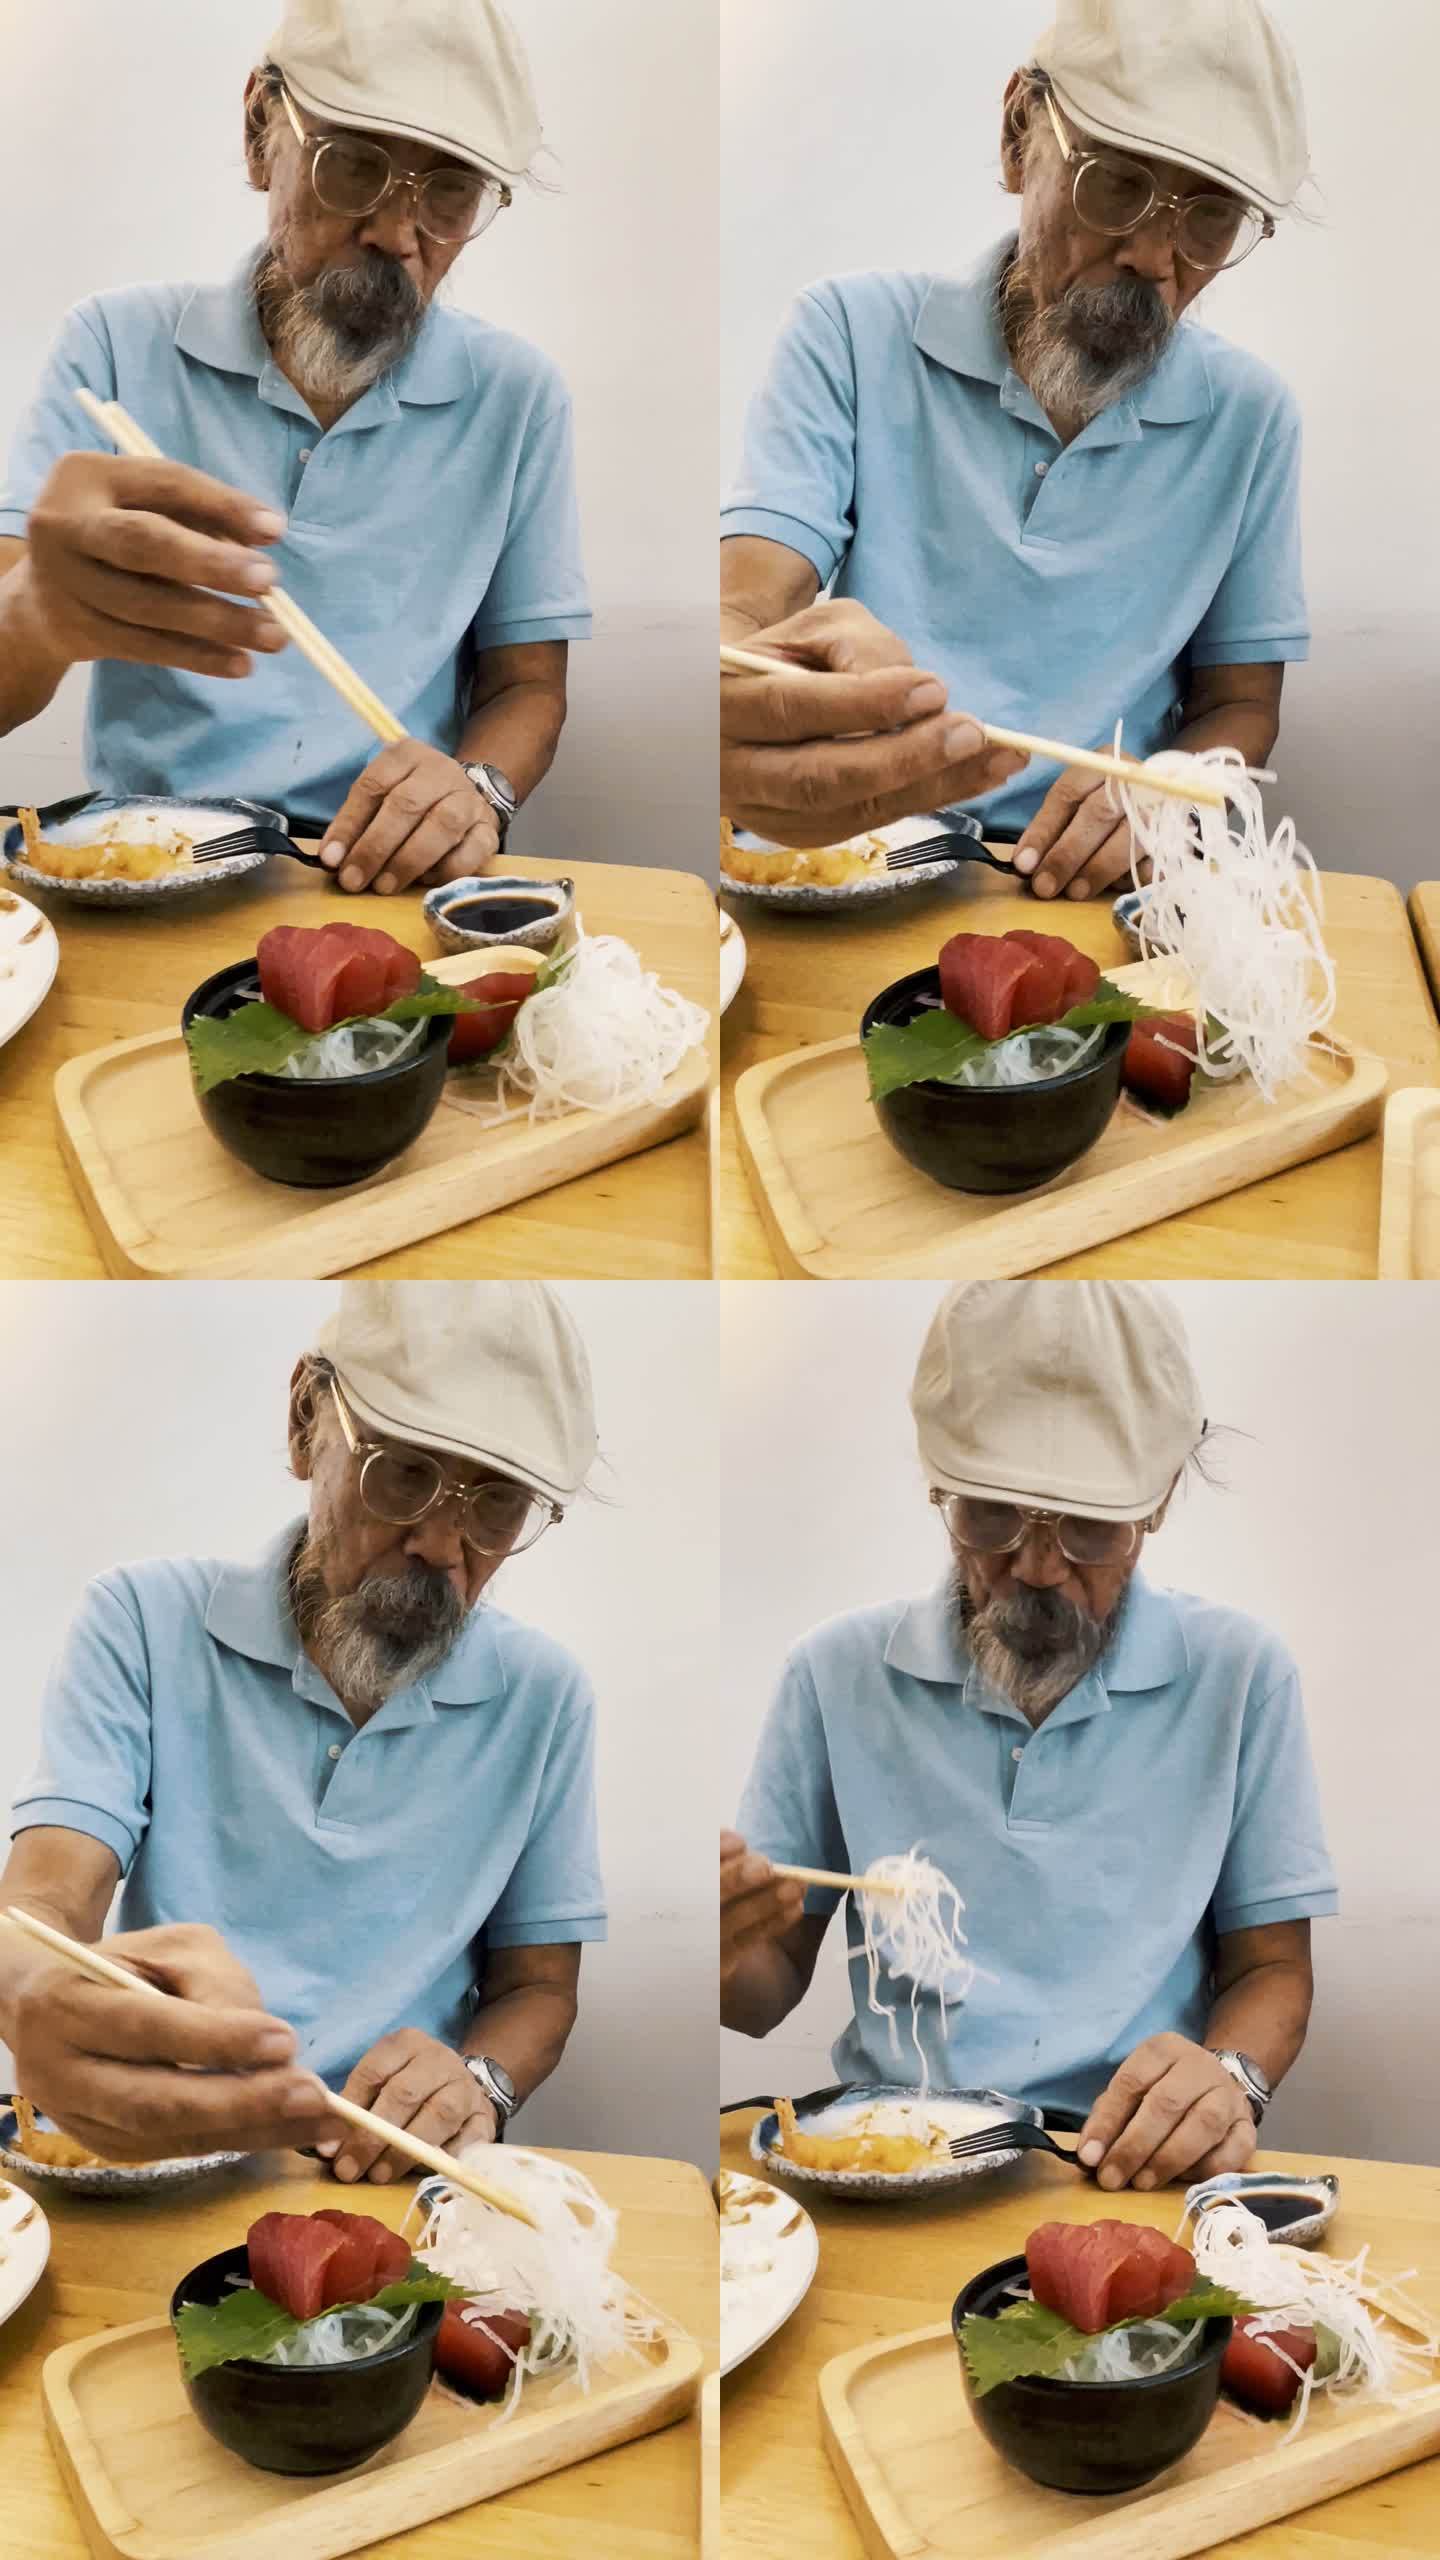 老年夫妇吃日本菜抖音快手竖屏竖版竖拍白人